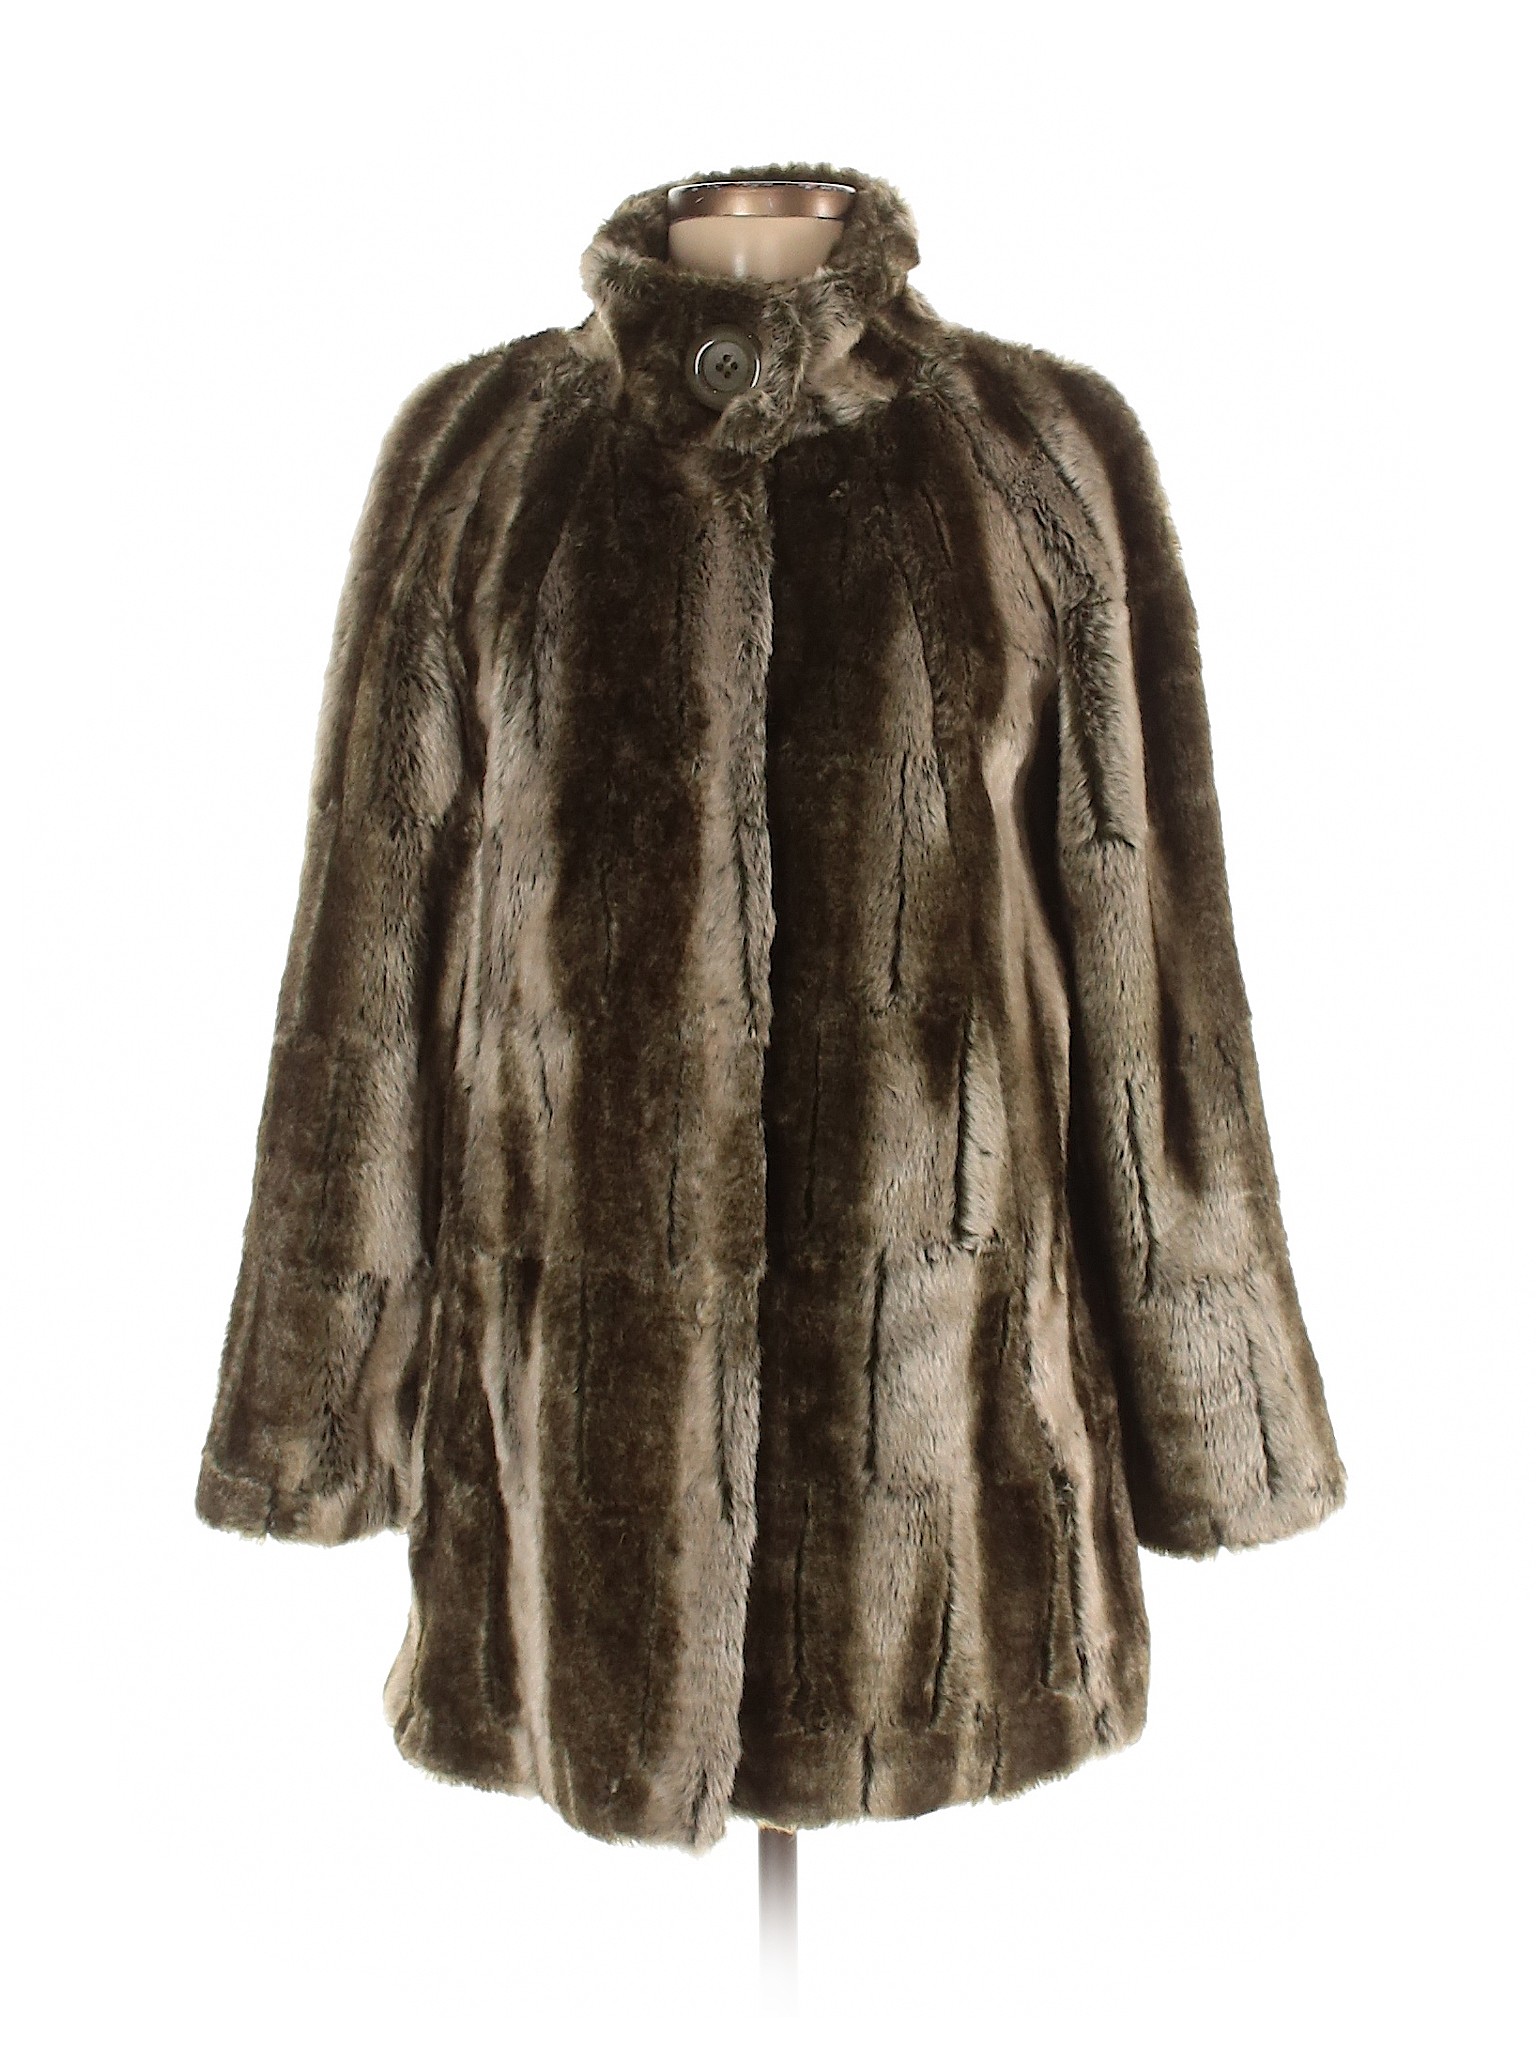 Hilary Radley Women Green Faux Fur Jacket XS | eBay